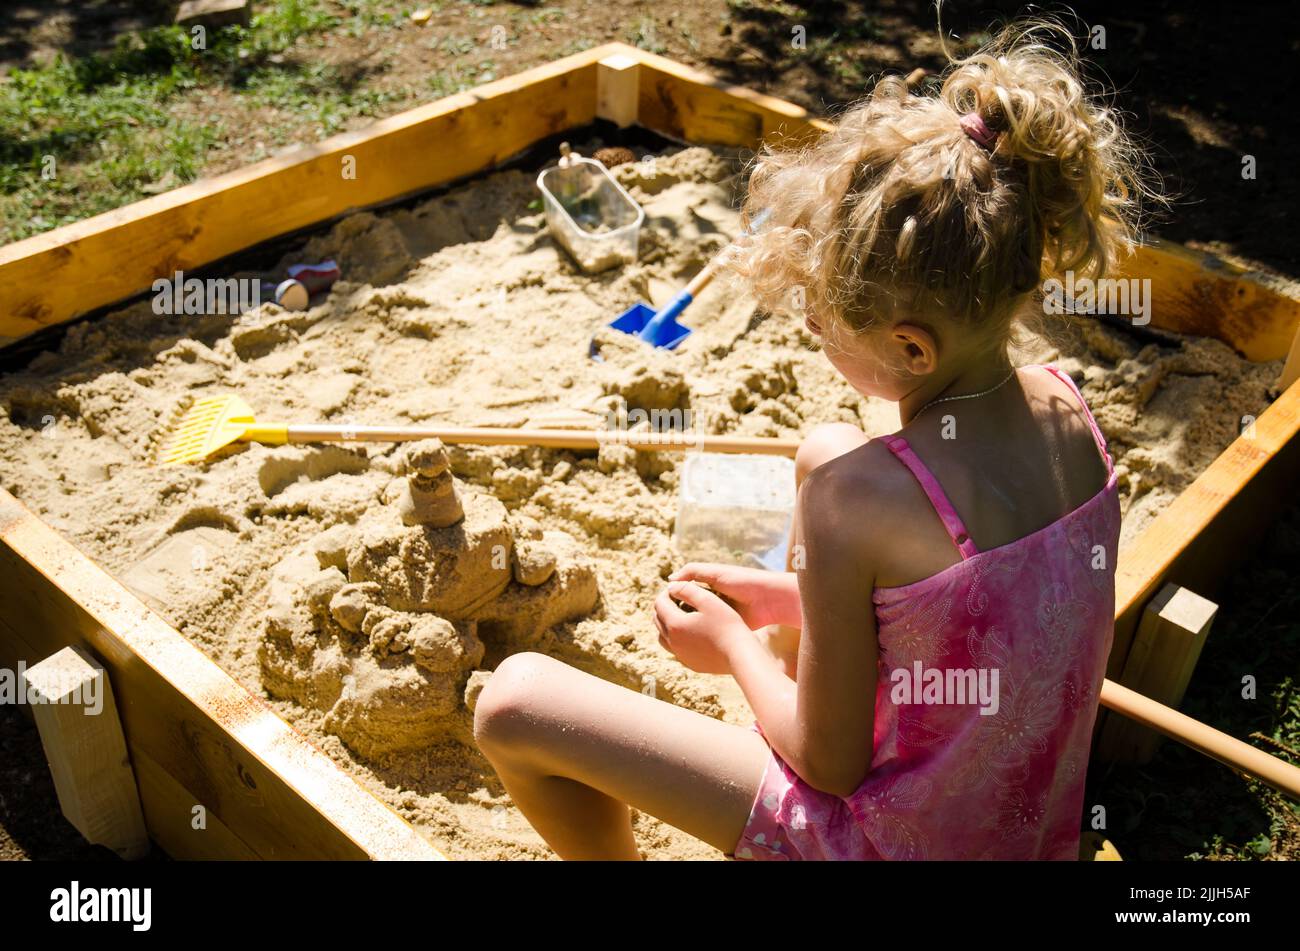 adorable fille blonde s'amuser avec le sable dans l'aire de jeux Banque D'Images